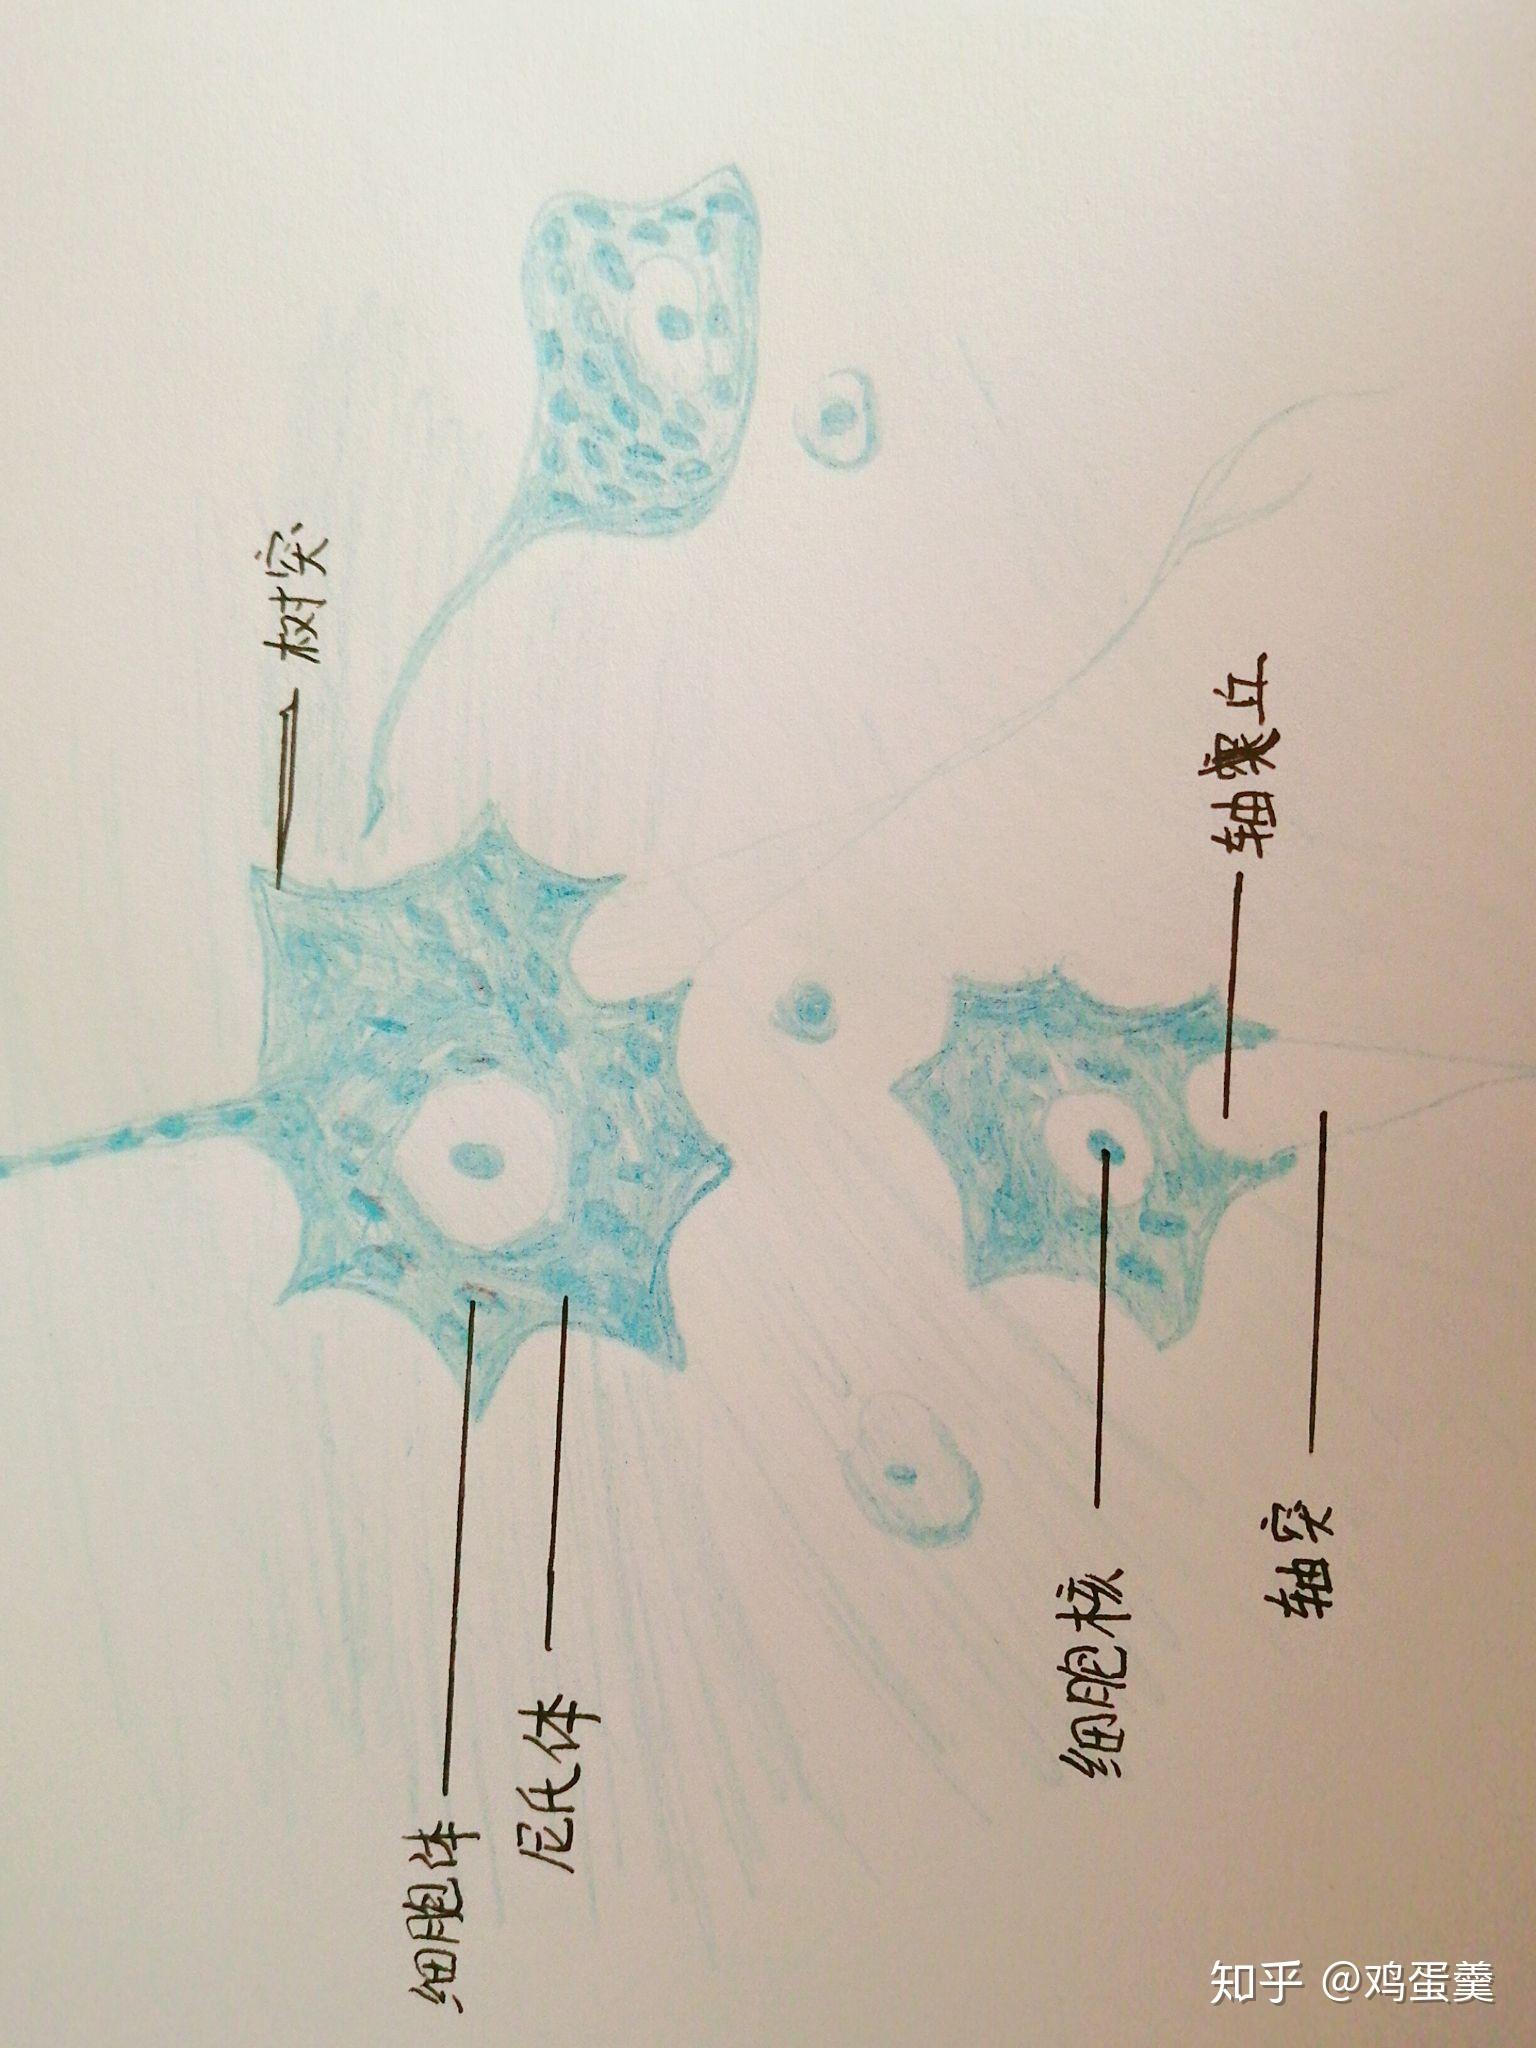 请问多级神经元(高倍)手绘图怎么画? 